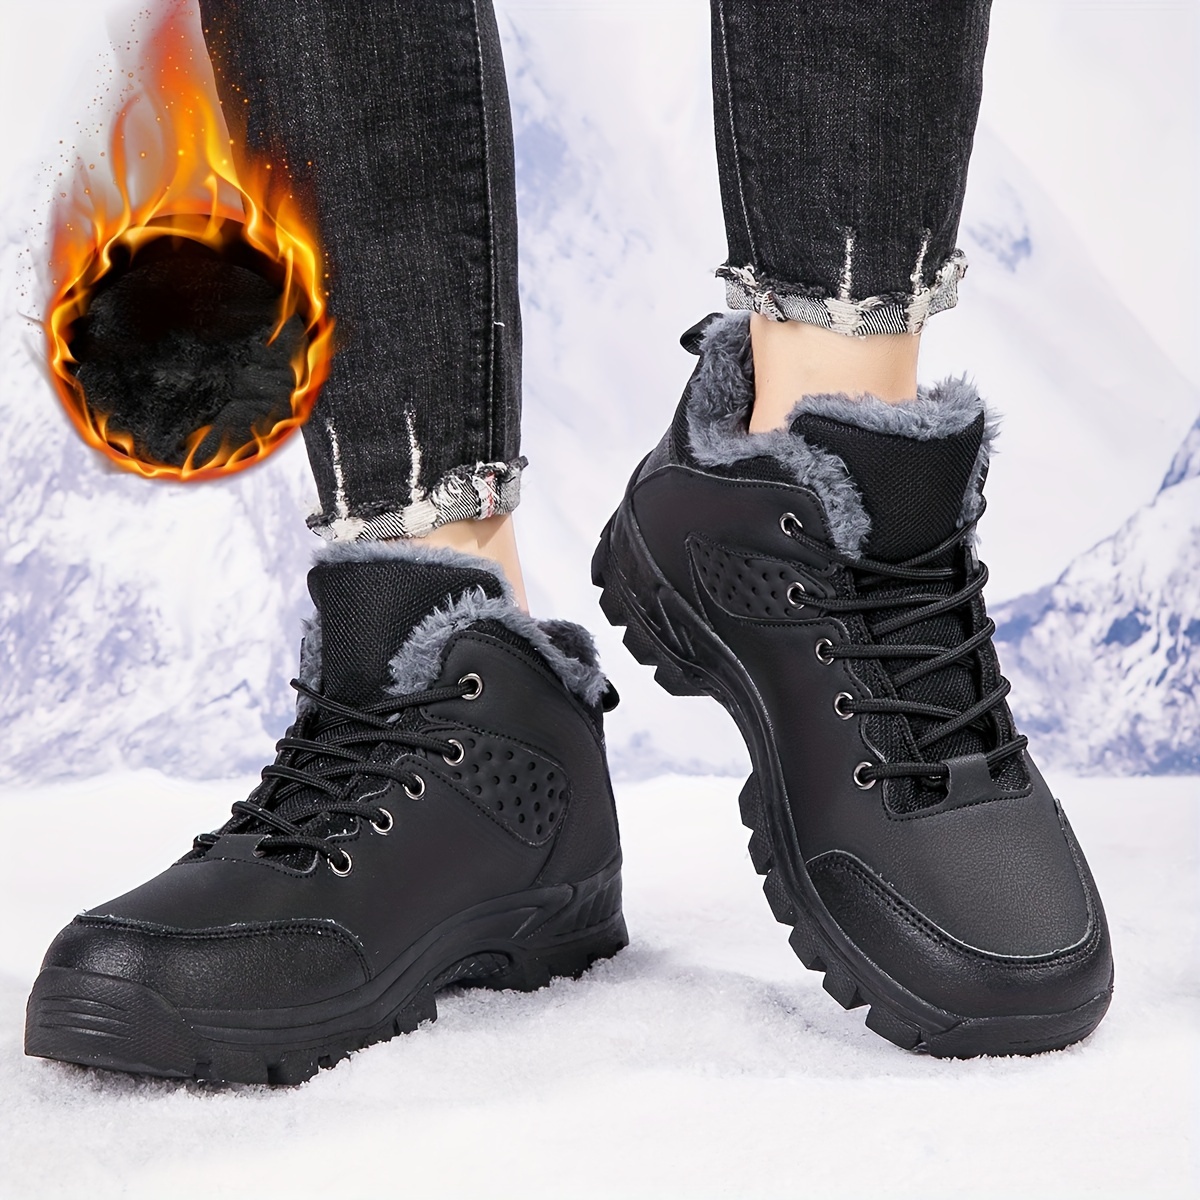 Las mejores botas de nieve para hombres